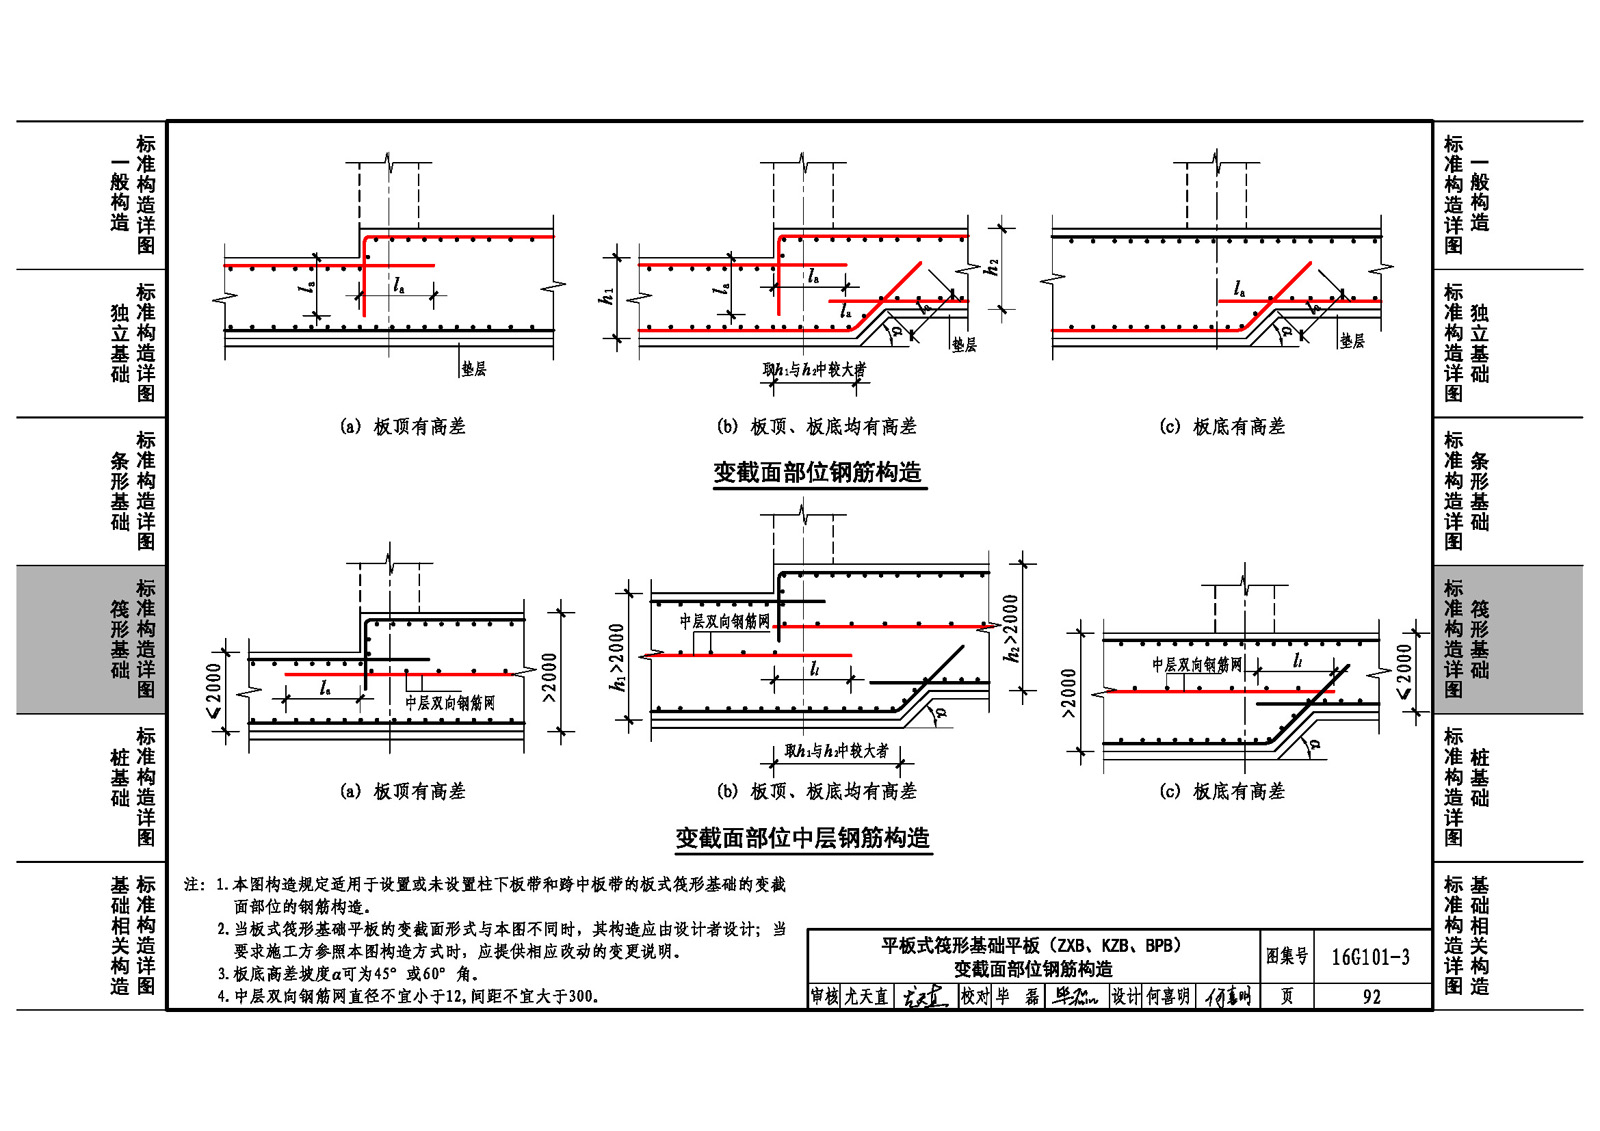 16G101-3:混凝土结构施工图平面整体表示方法制图规则和构造详图(独立基础、条形基础、筏形基础、桩基础) - 国家建筑标准设计网